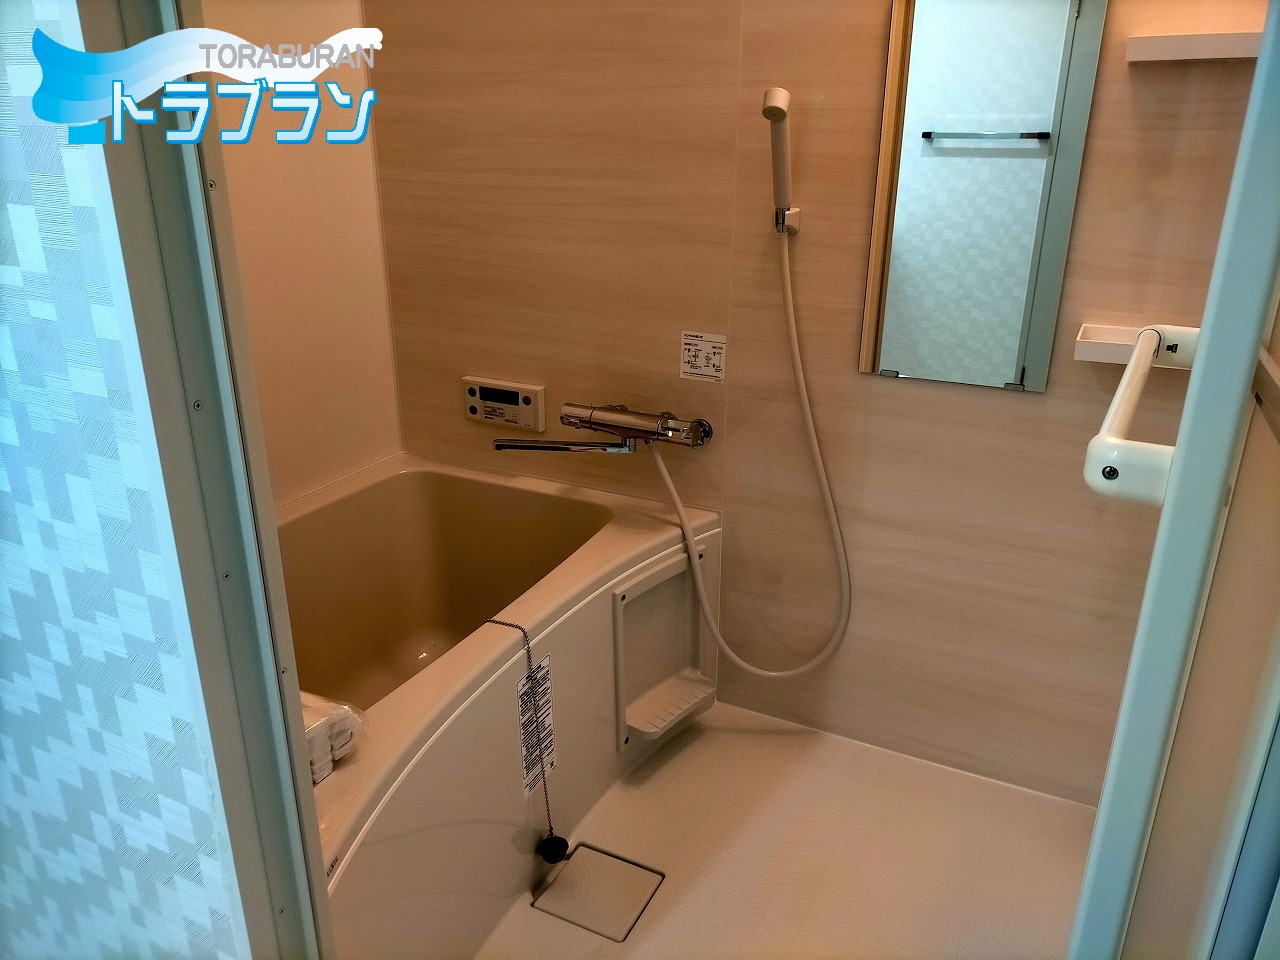 マンションのリフォーム 浴室取替え 浴室リフォーム 賃貸 神戸市 トラブラン